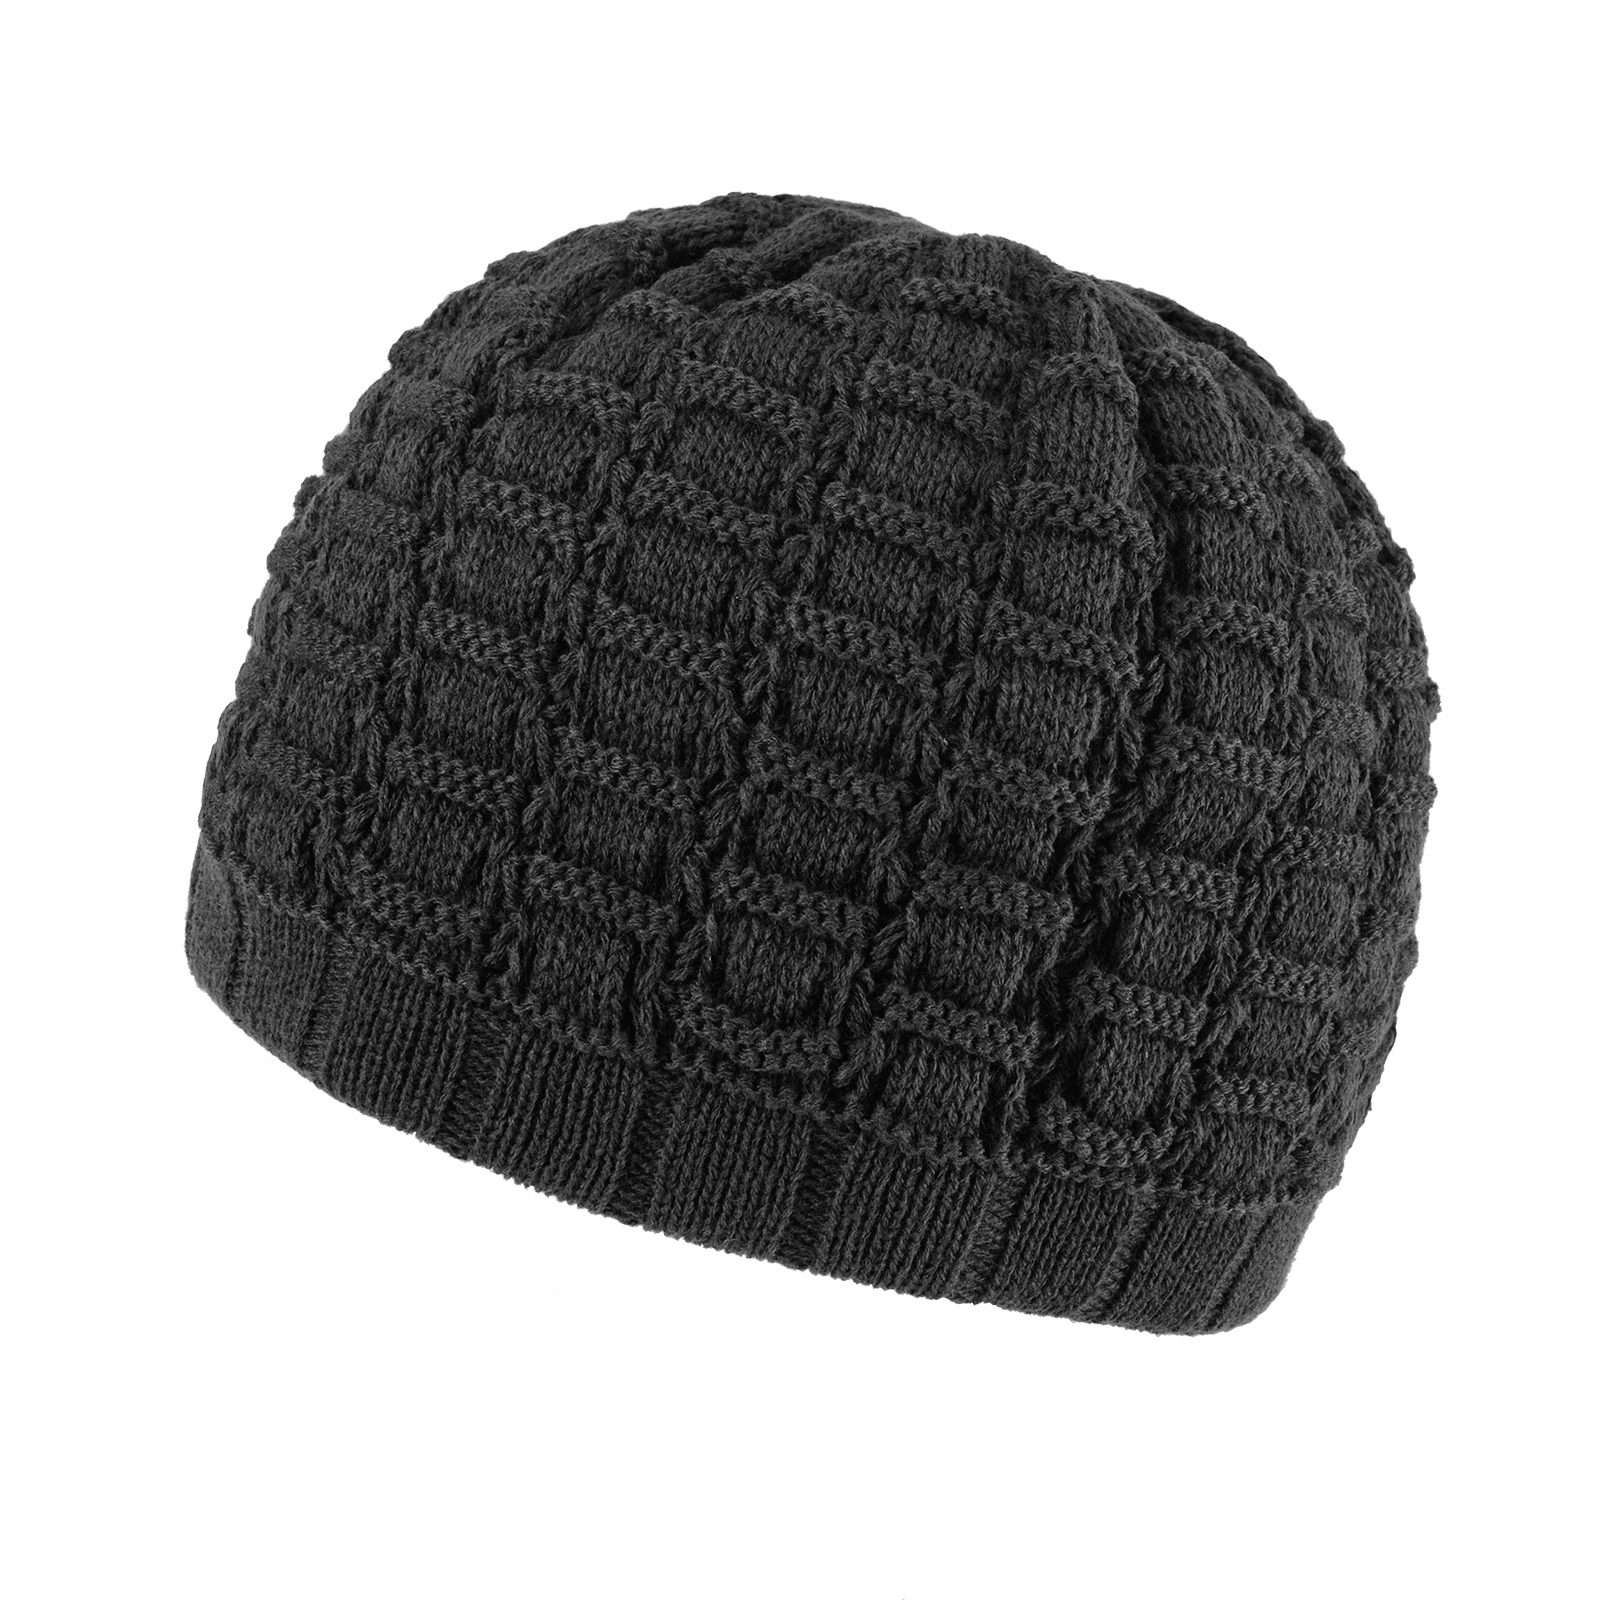 bonnet-gris-anthracite-tricot-hiver--CP-001198